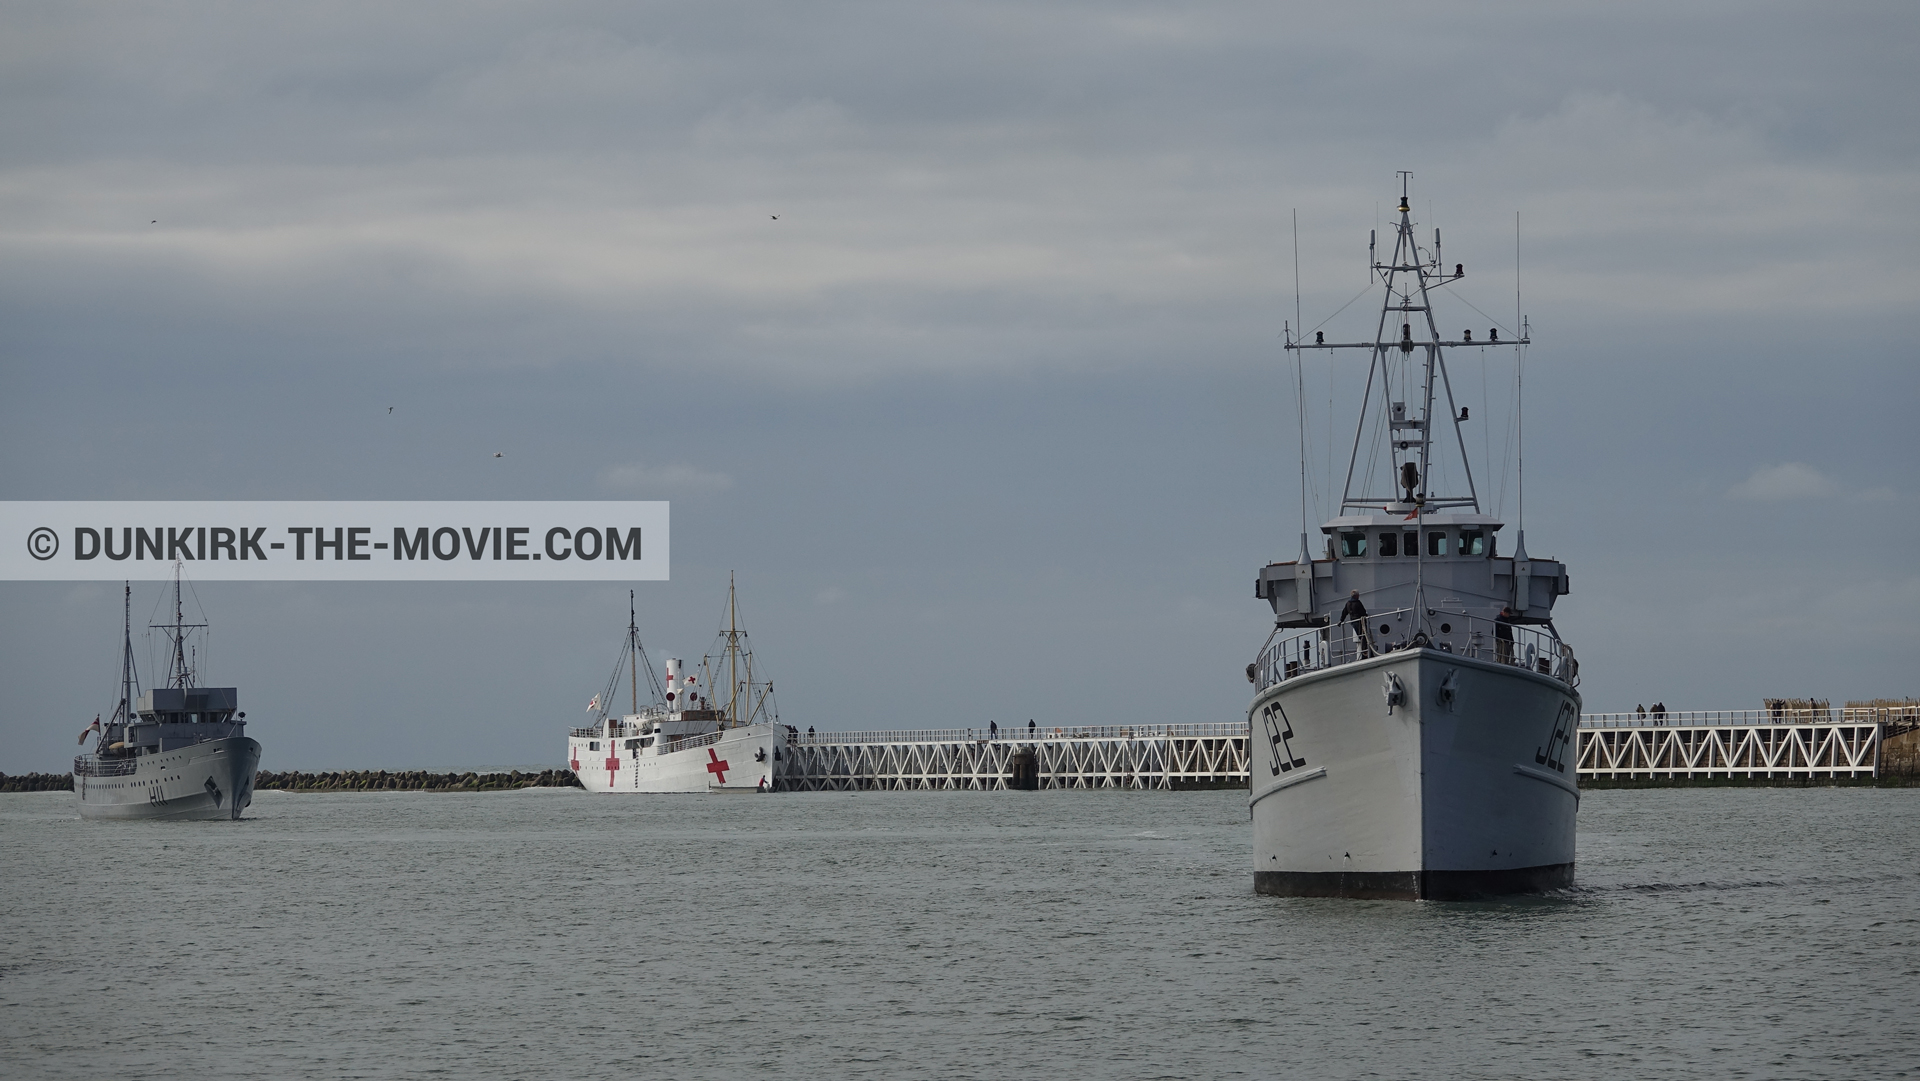 Photo avec bateau, ciel nuageux, H11 - MLV Castor, J22 -Hr.Ms. Naaldwijk, jetée EST, mer calme, M/S Rogaland,  des dessous du Film Dunkerque de Nolan